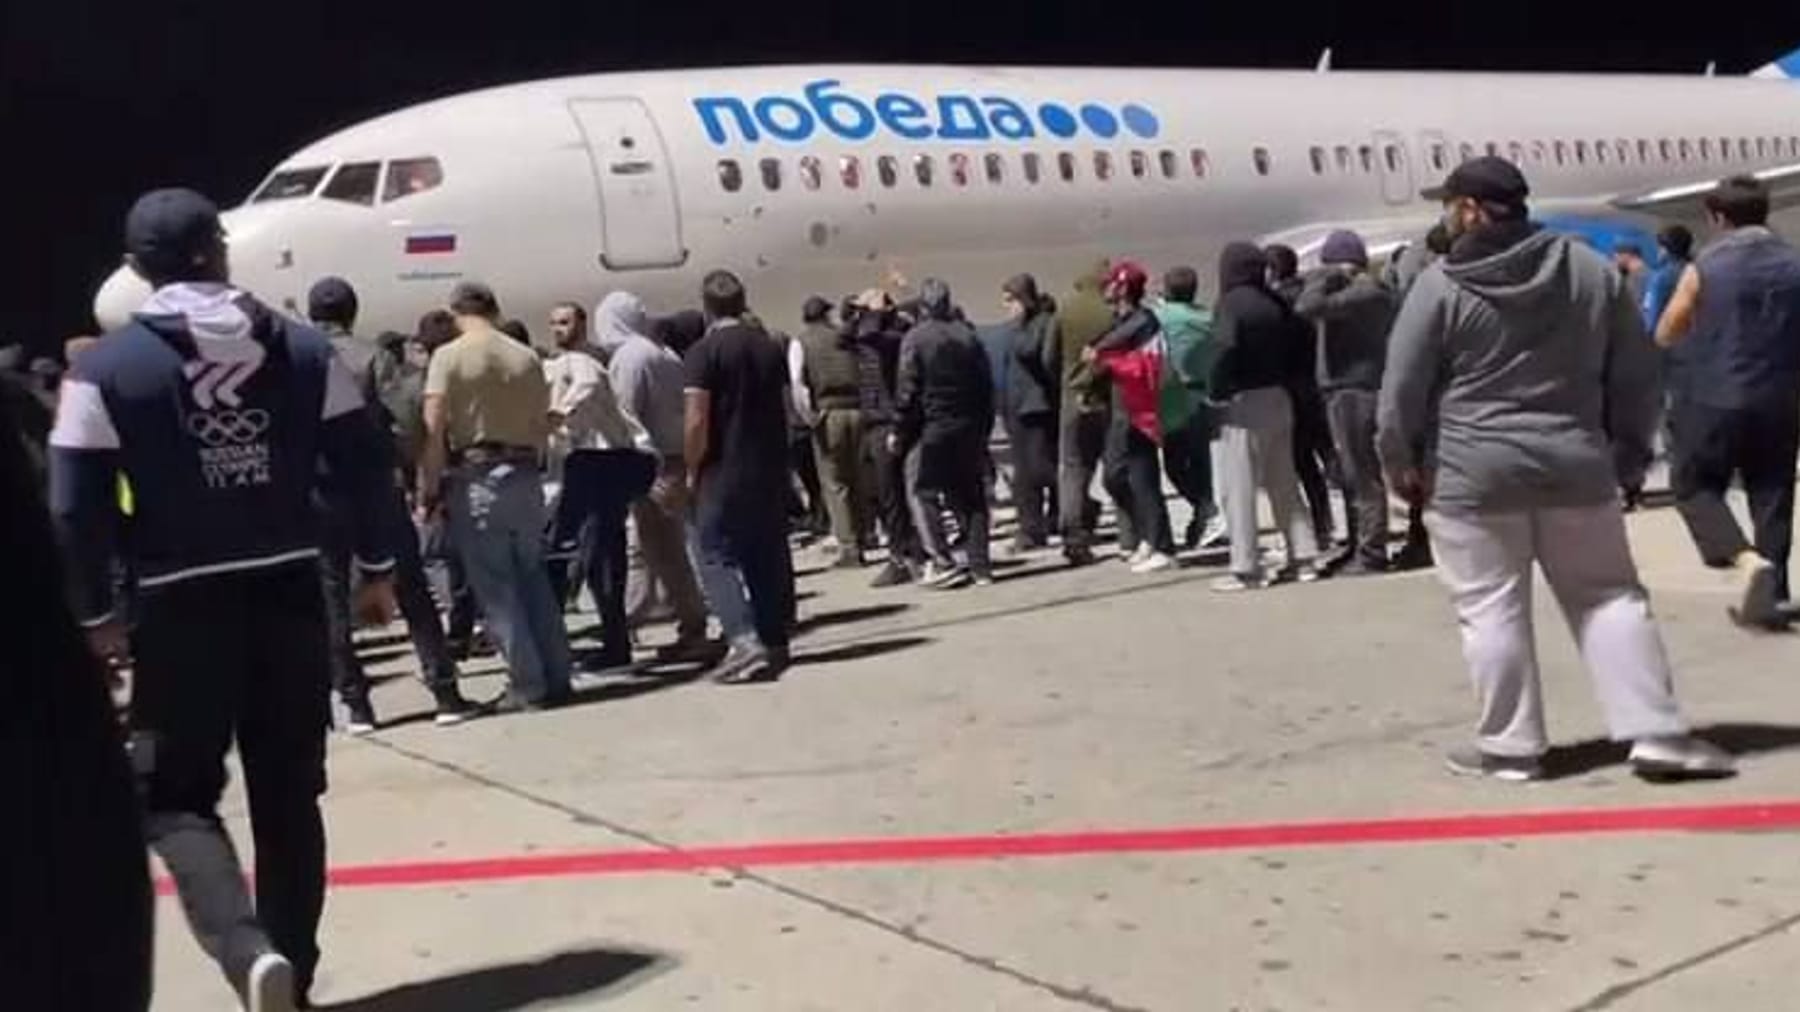 Mob stürmt Flughafen – Israel stellt Forderung an Russland